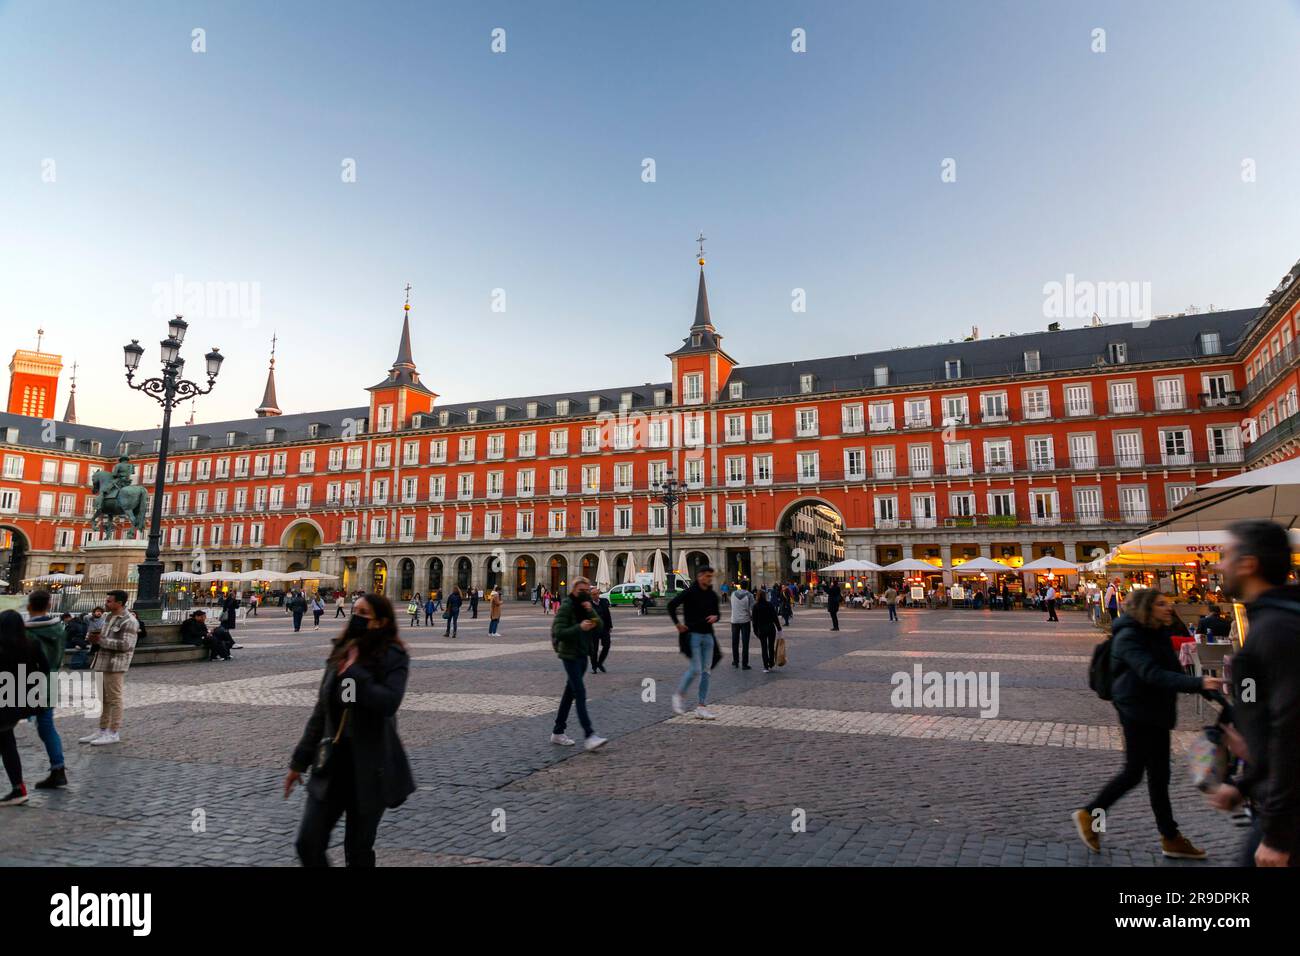 Madrid, Spanien - 17. FEBRUAR 2022: Stadtblick von der Plaza Mayor, Stadtplatz, ein wichtiger öffentlicher Raum im Herzen von Madrid, der Hauptstadt Spaniens. Stockfoto